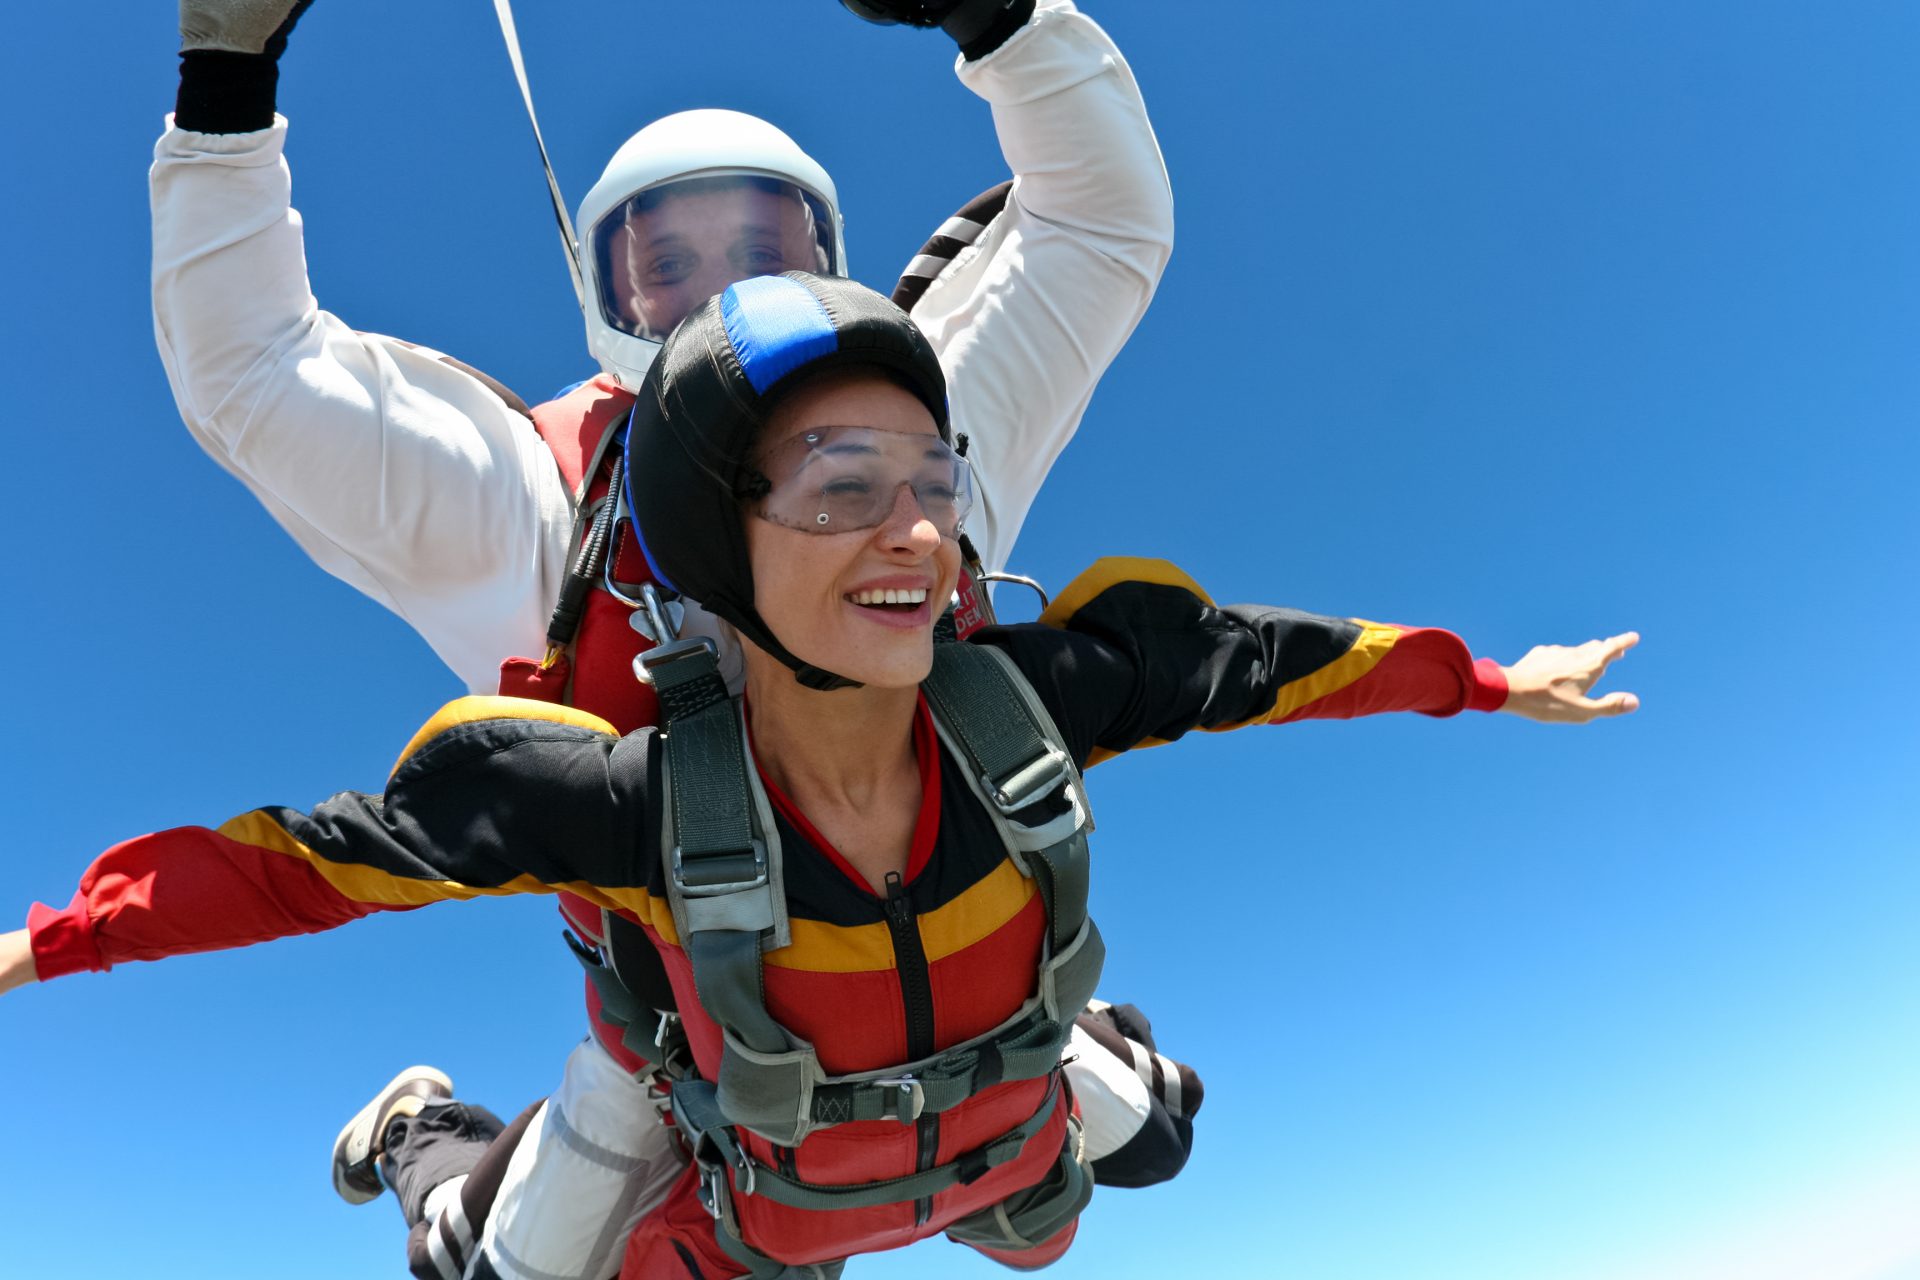 Skok ze spadochronem – gdzie szukać okazji?